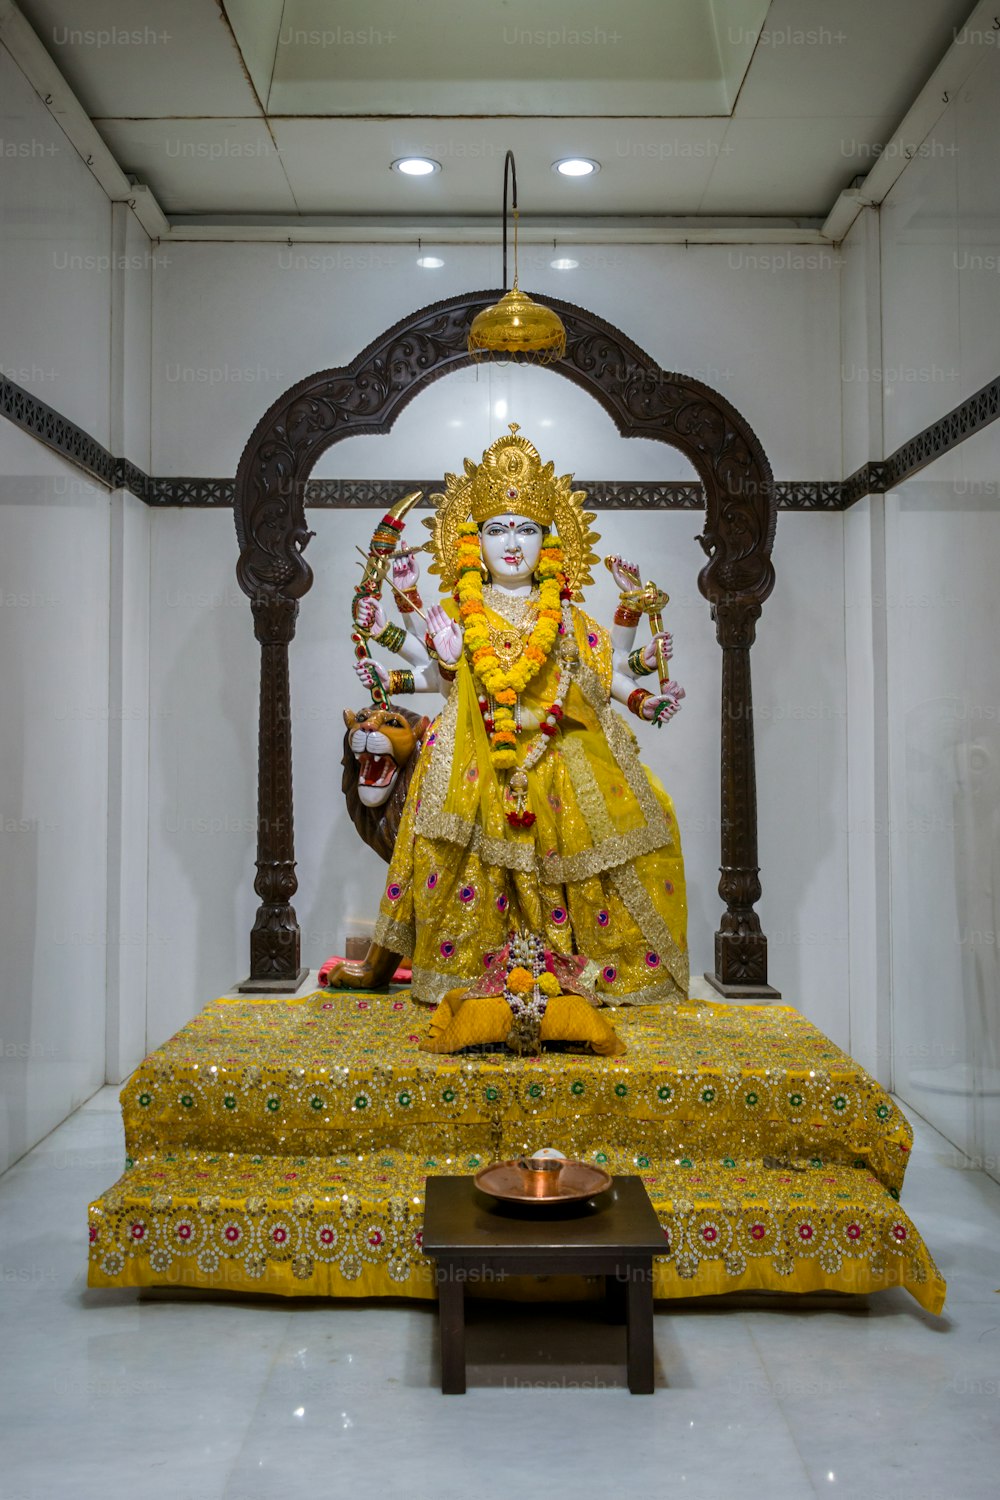 Una estatua de un dios hindú en una habitación